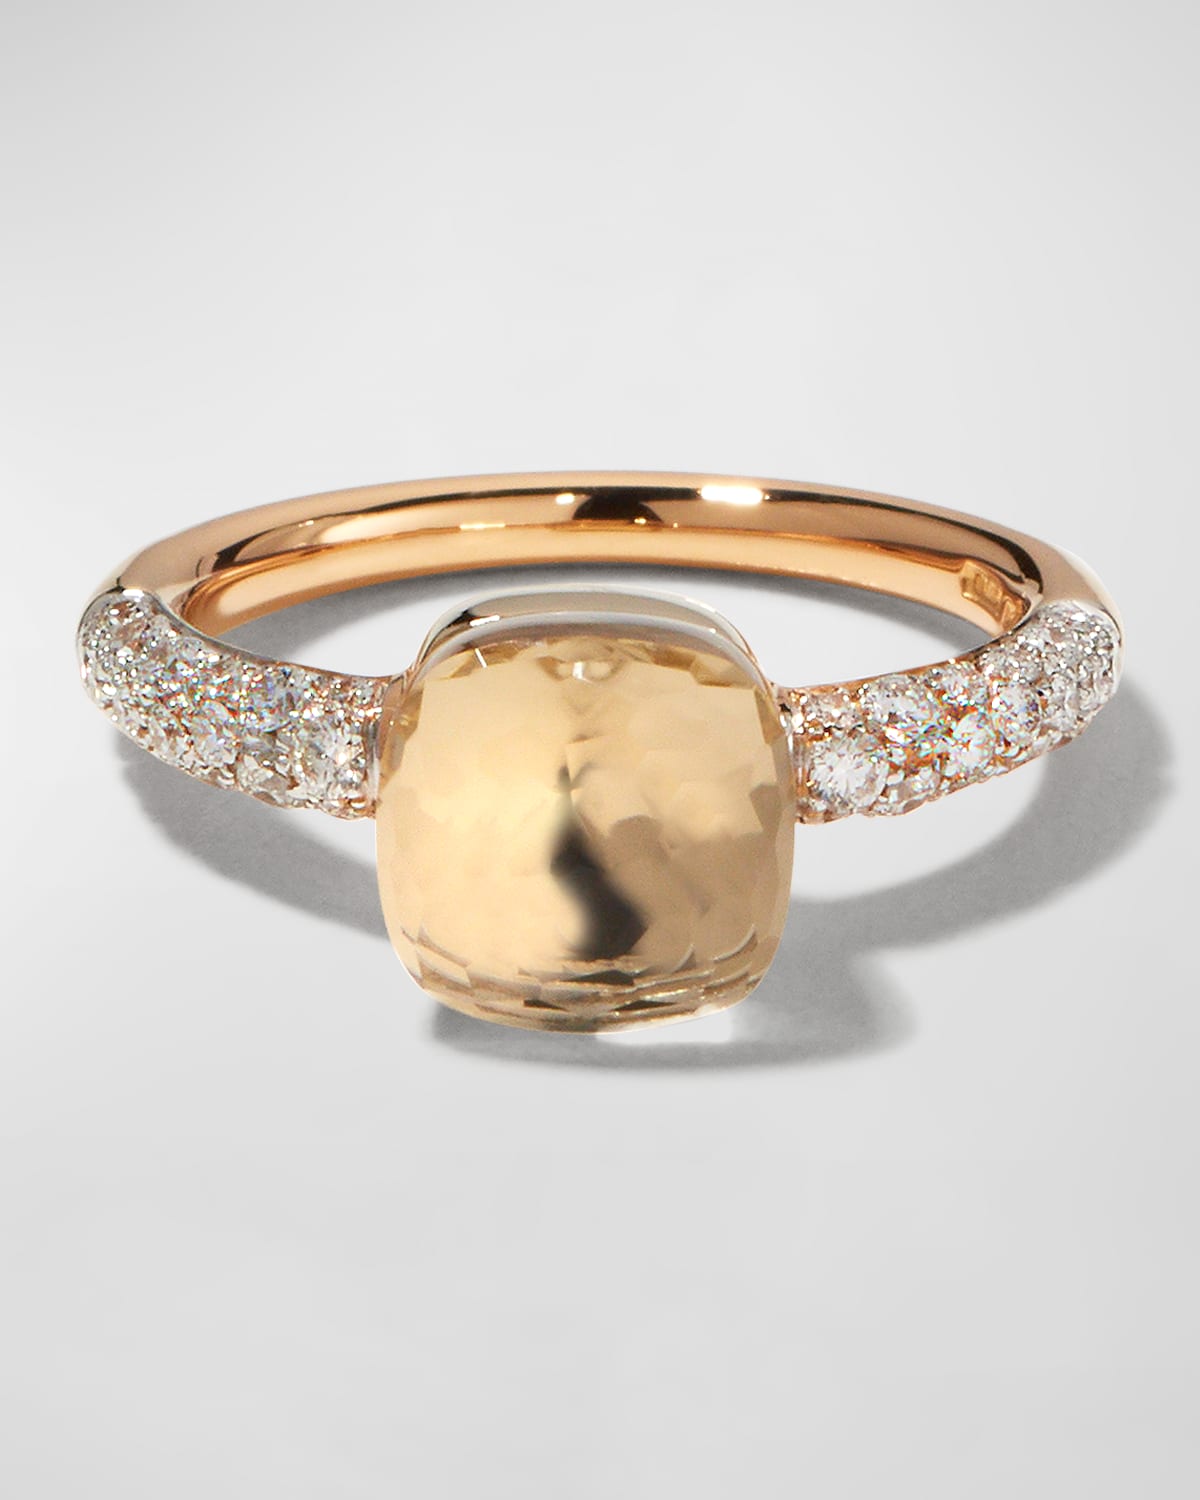 Nudo 18k Gold Ring w/ White Topaz and Diamonds, Size 52